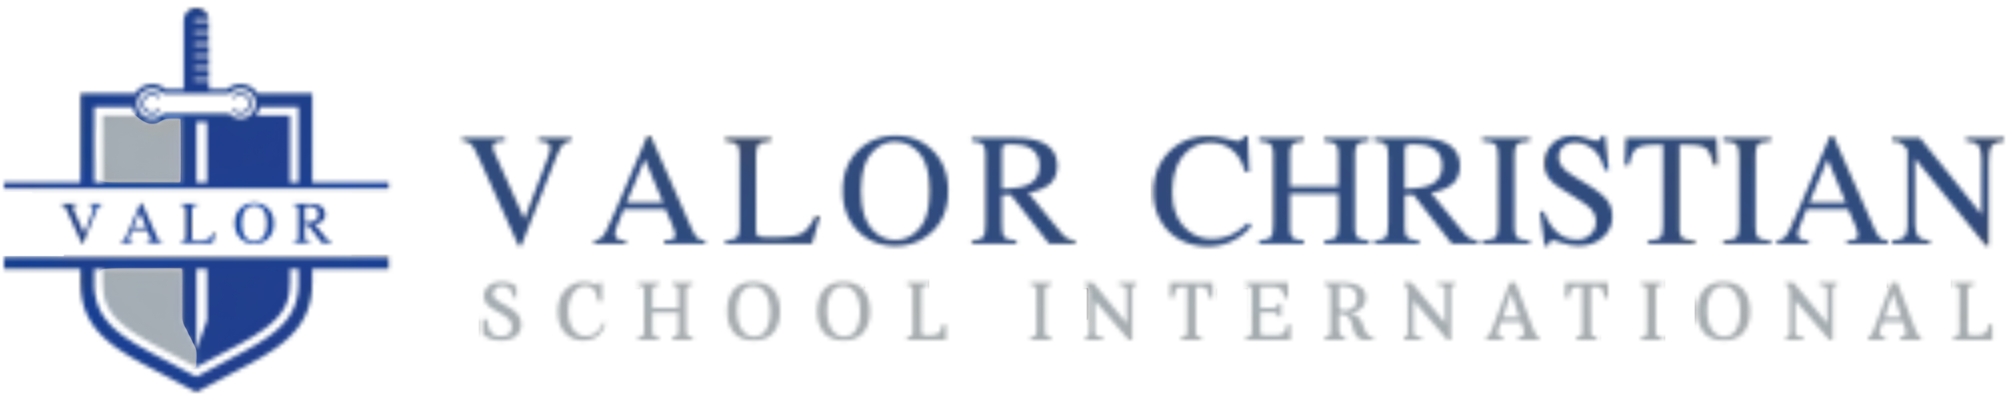 Valor Christian School International  英勇基督教国际学校